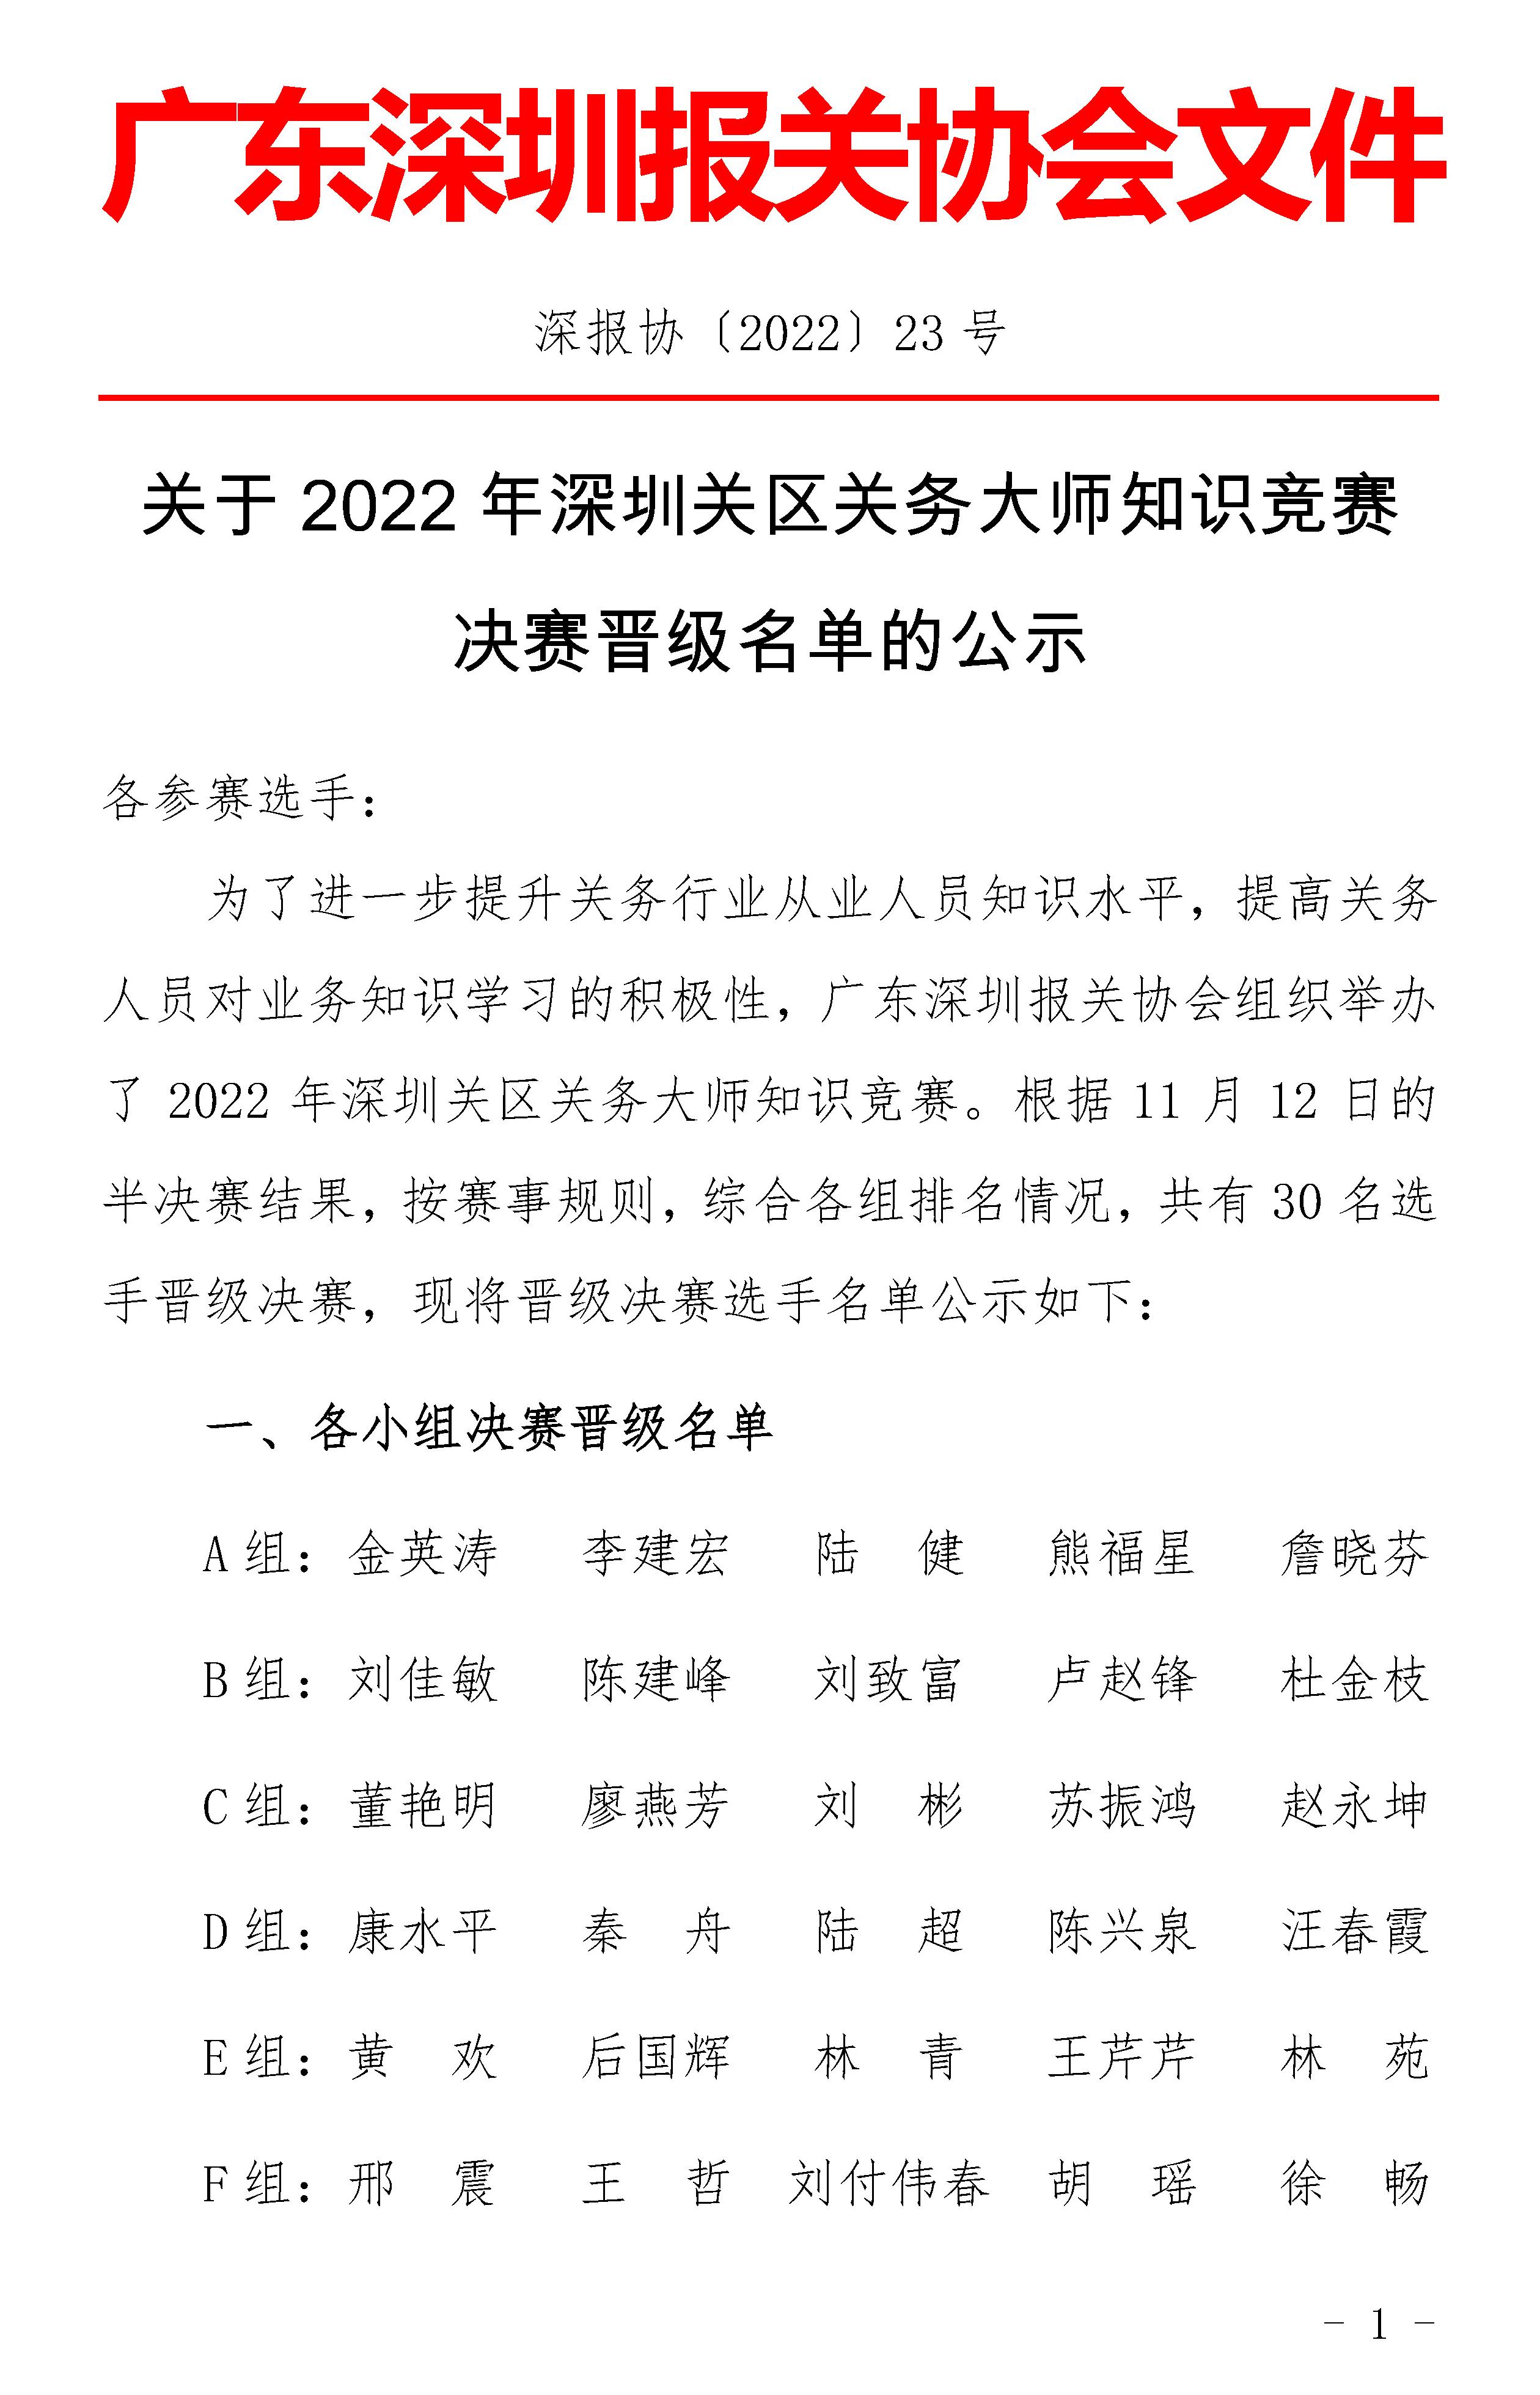 关于2022年深圳关区关务大师知识竞赛决赛晋级名单的公示_已签章_页面_1.jpg